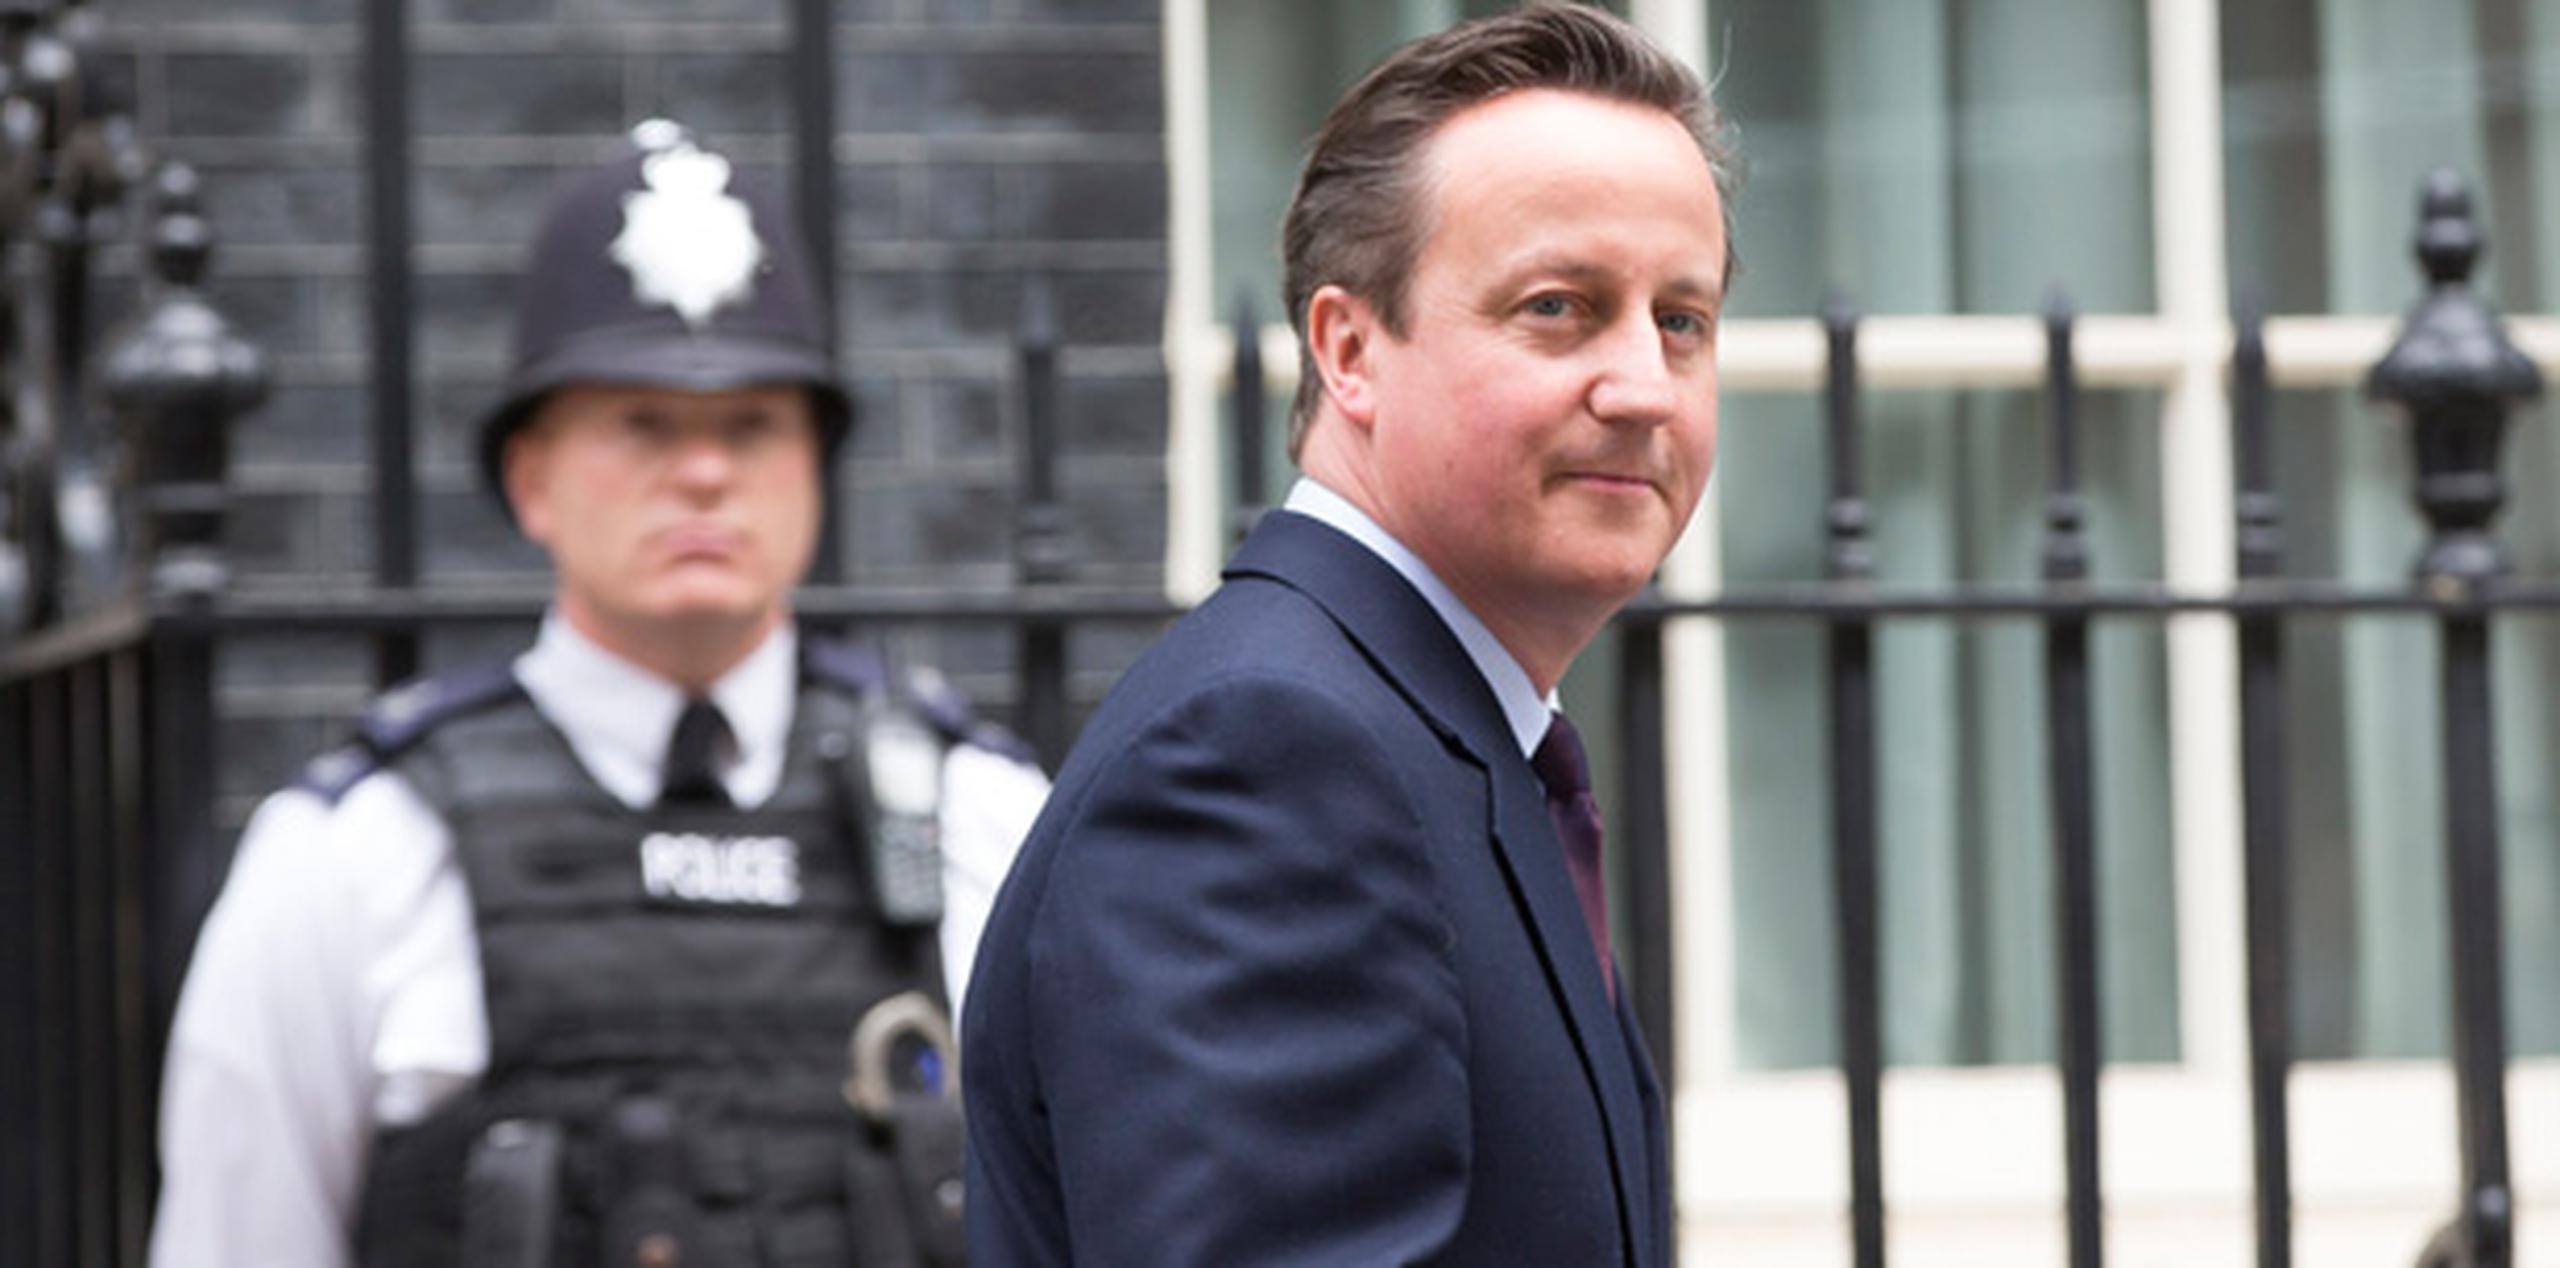 La oficina del primer ministro David Cameron dijo que el político visitará más tarde el Palacio de Buckingham, donde se espera que comunique a la reina Isabel II que tiene suficientes apoyos para formar gobierno. (AP)